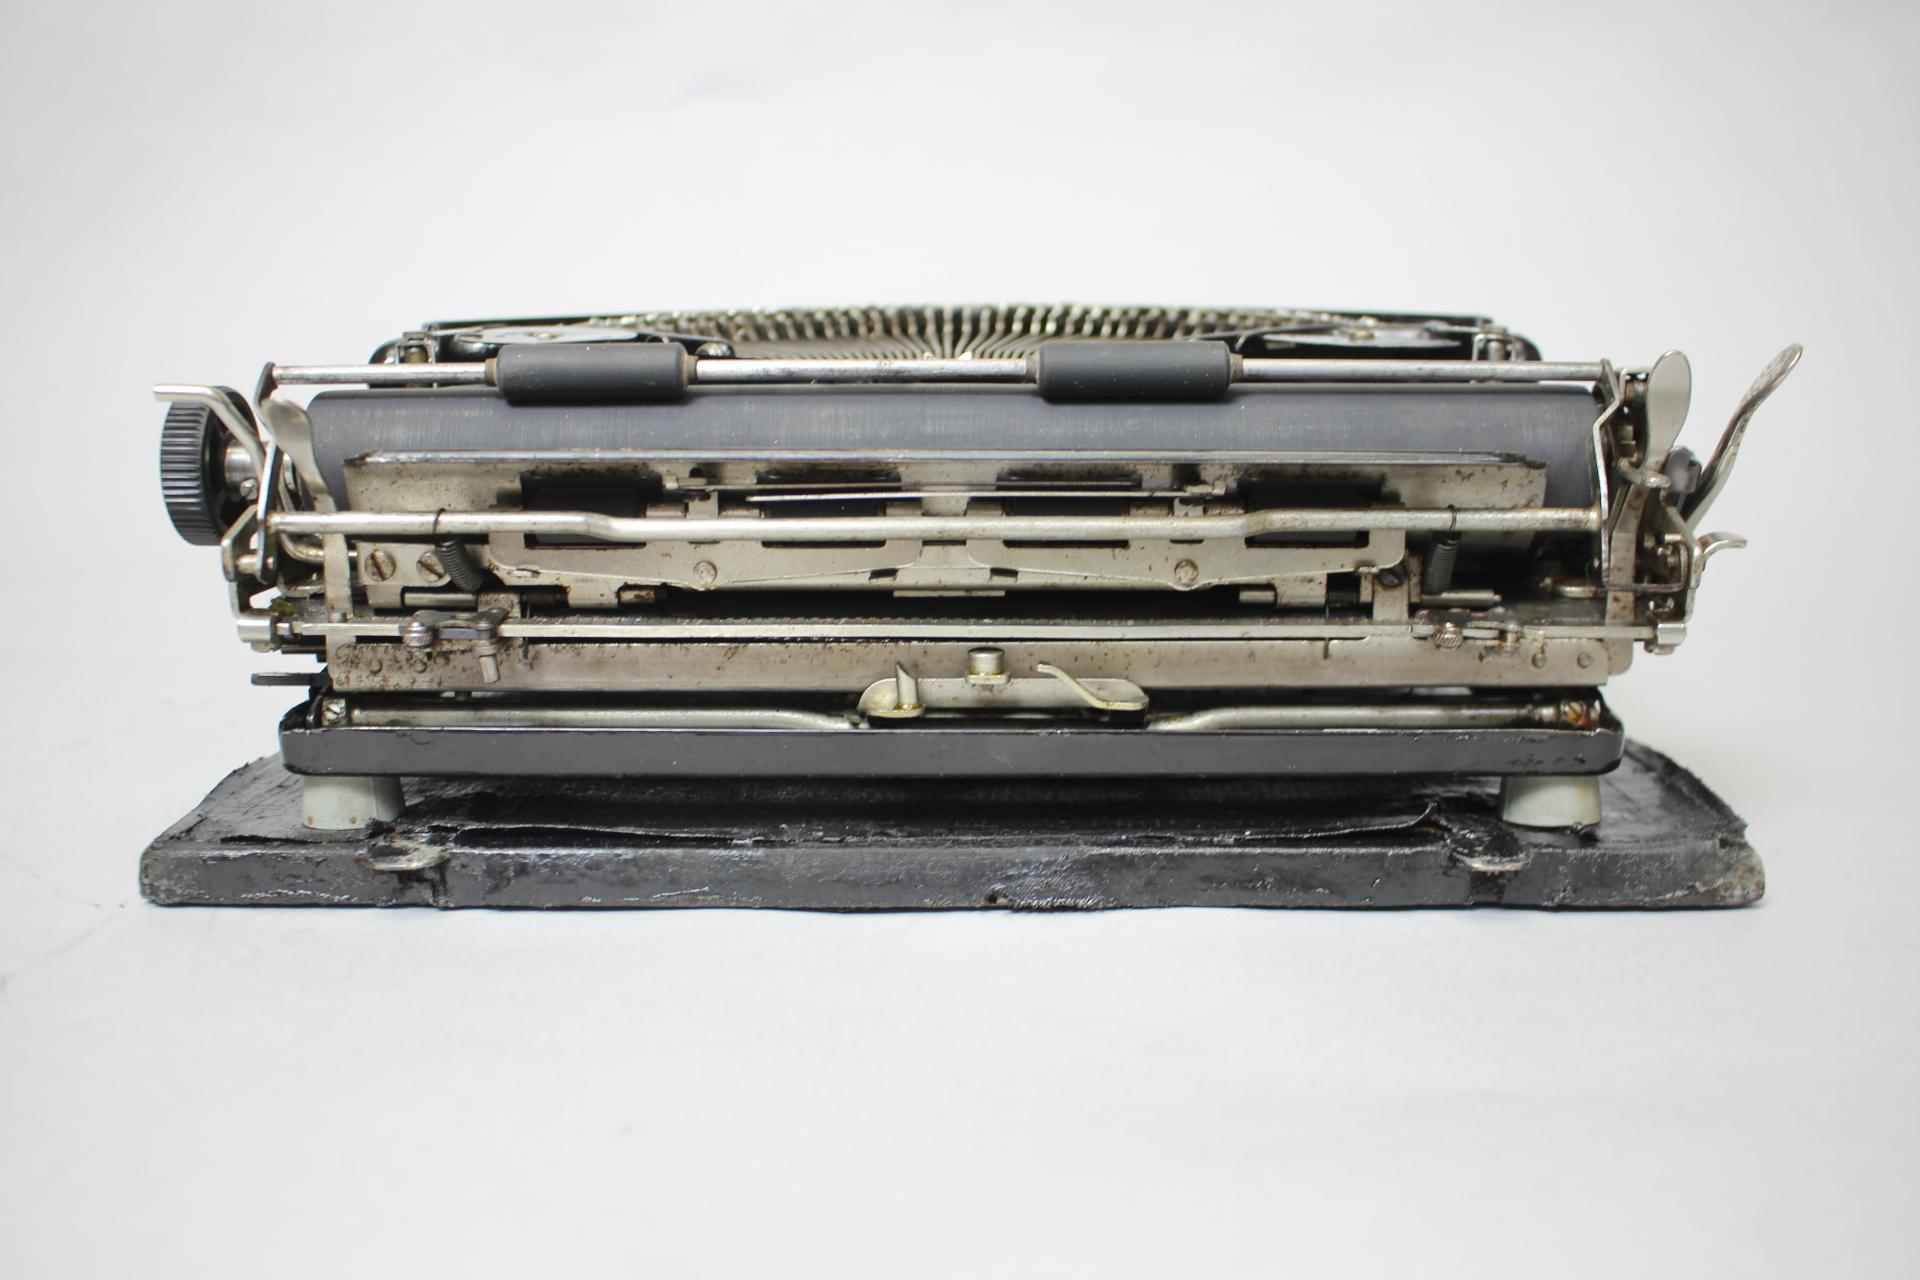 remington rand typewriter